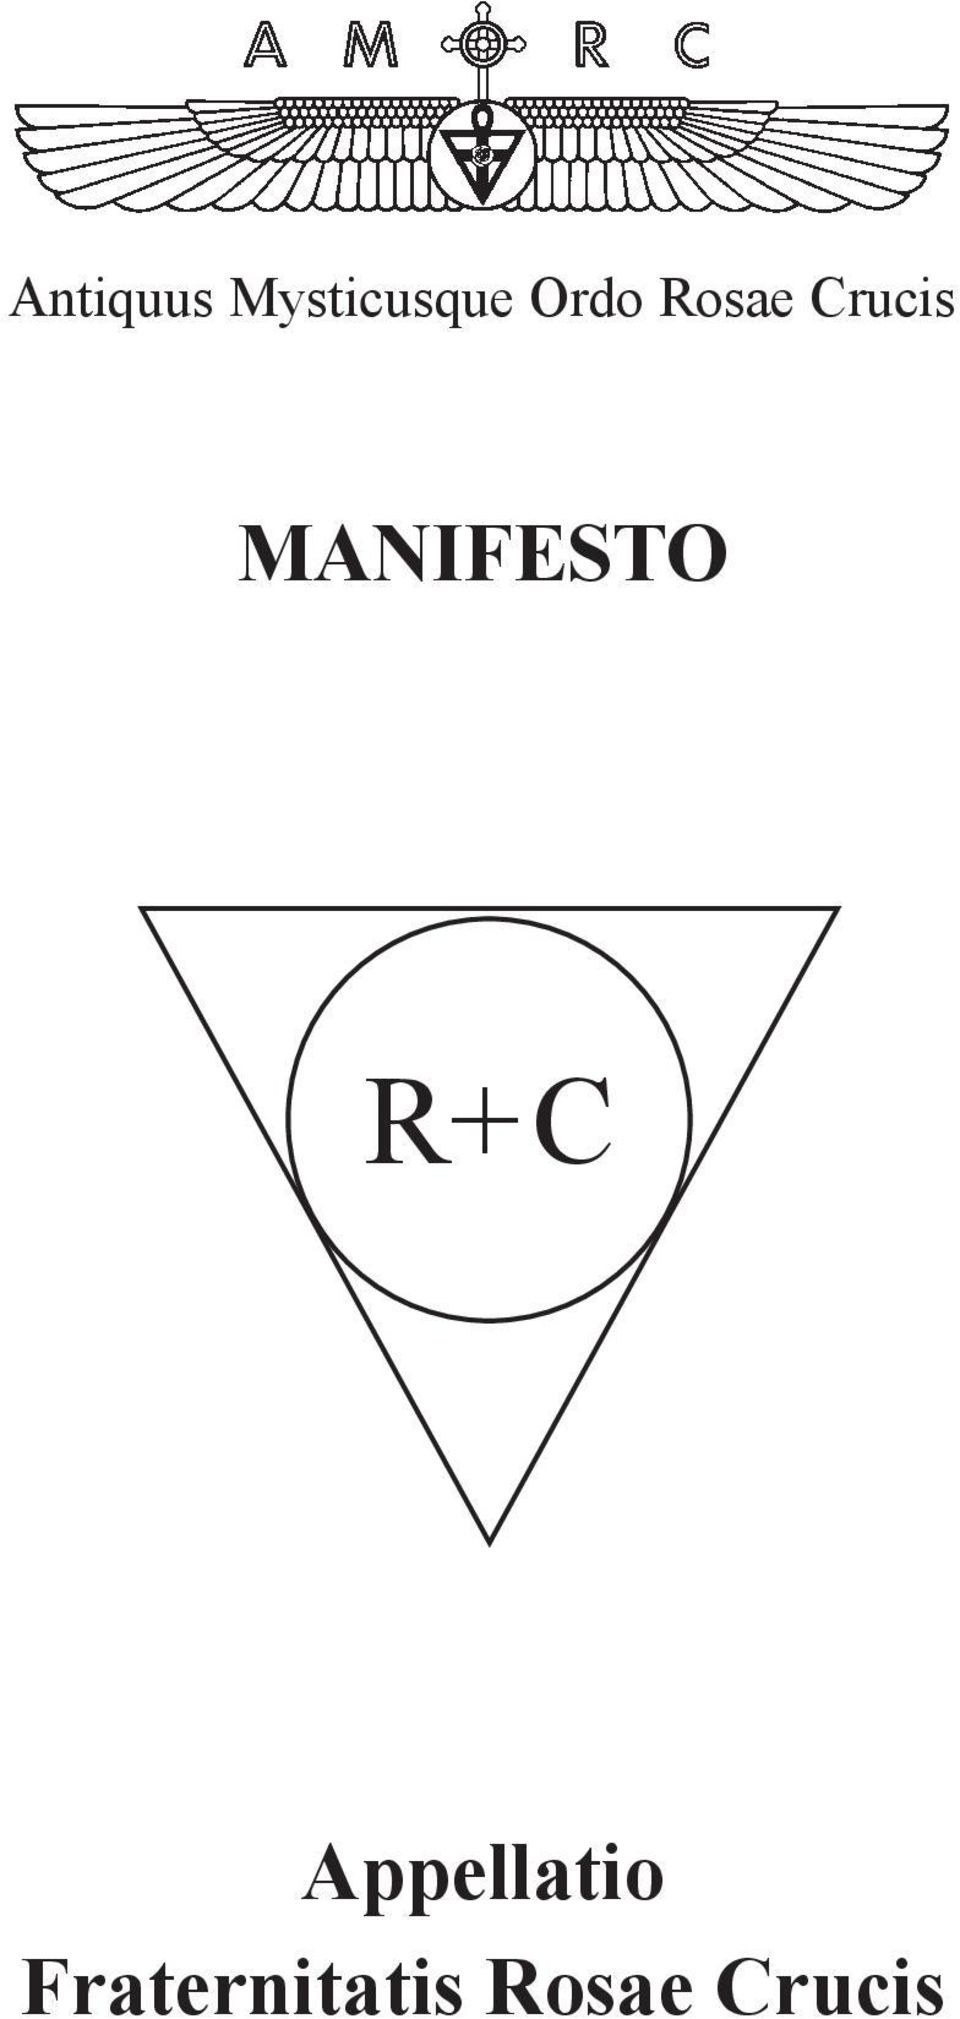 MANIFESTO R+ C